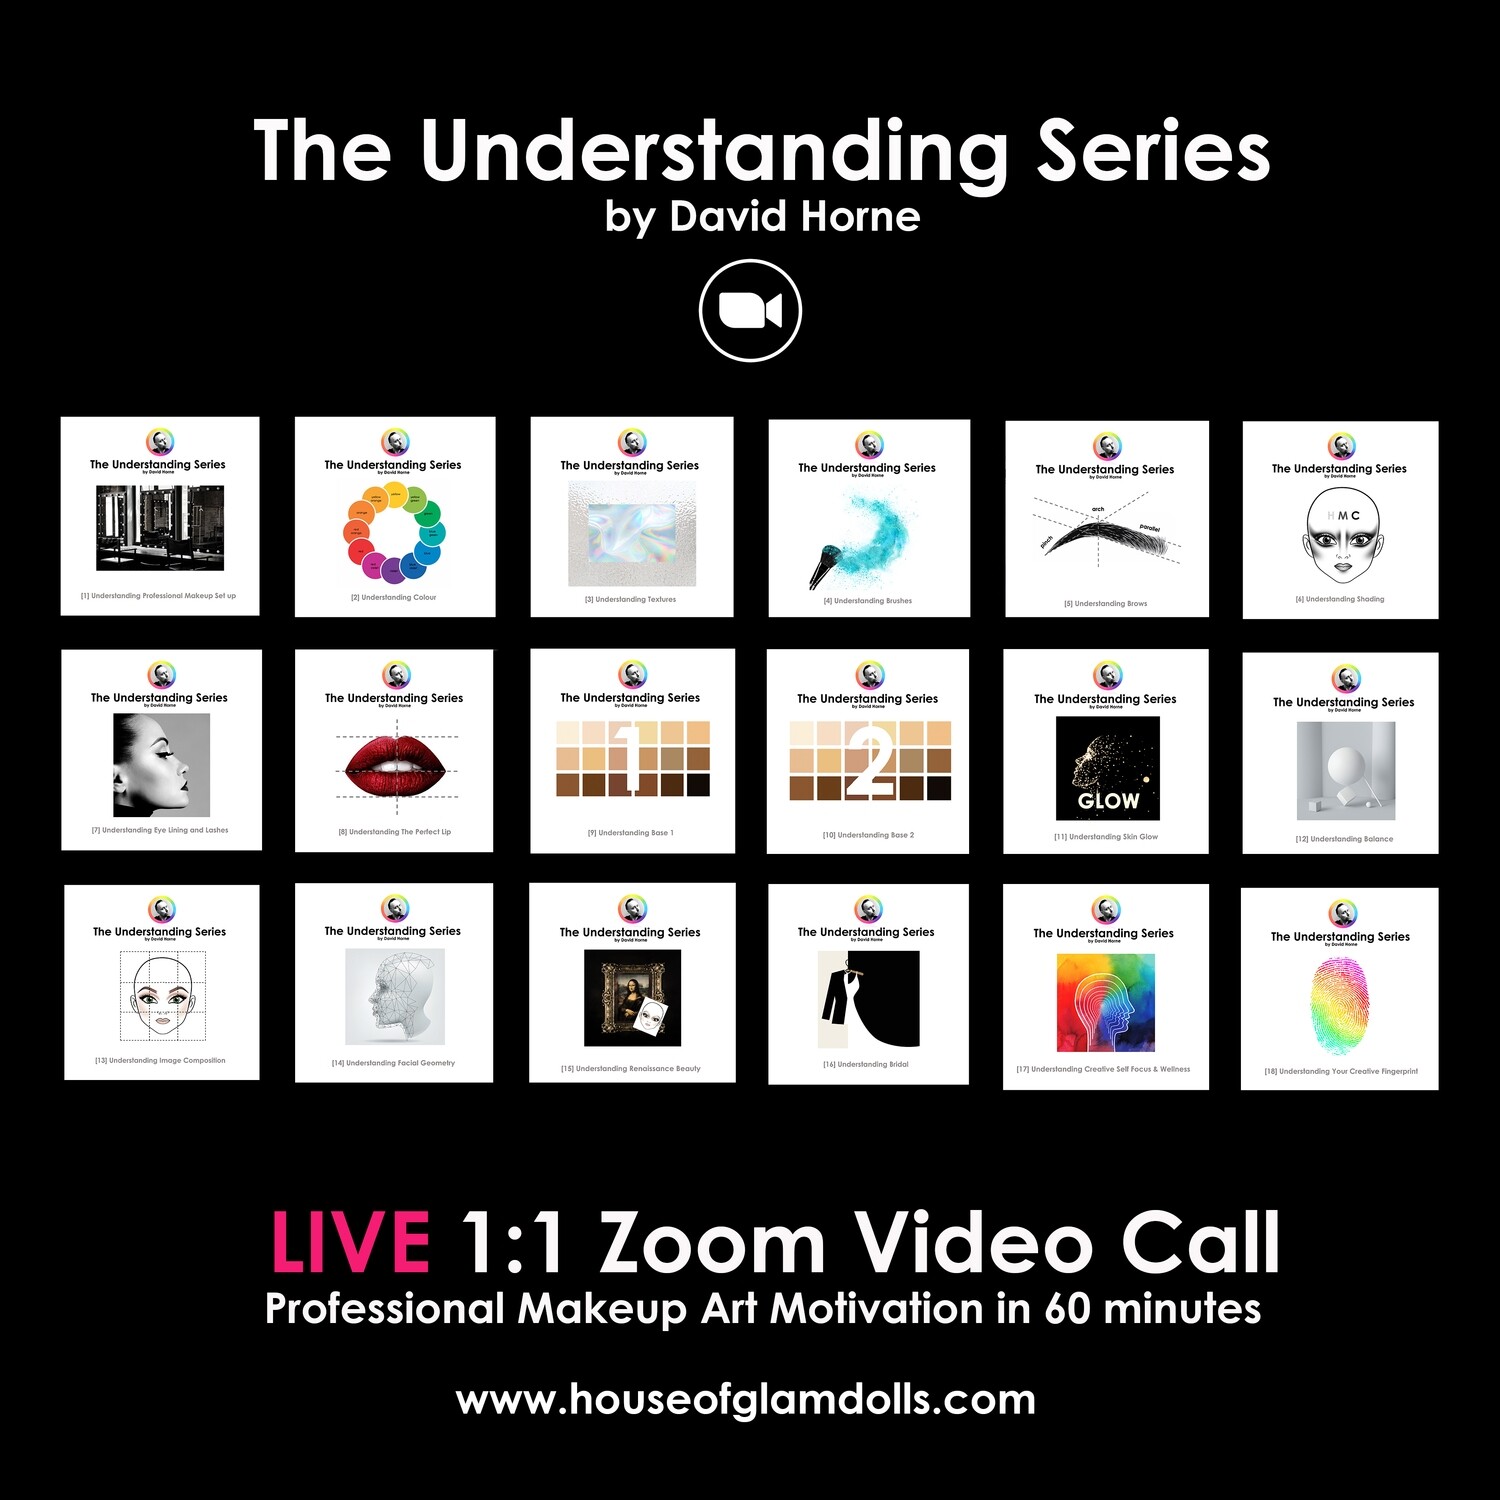 The Understanding Series Program